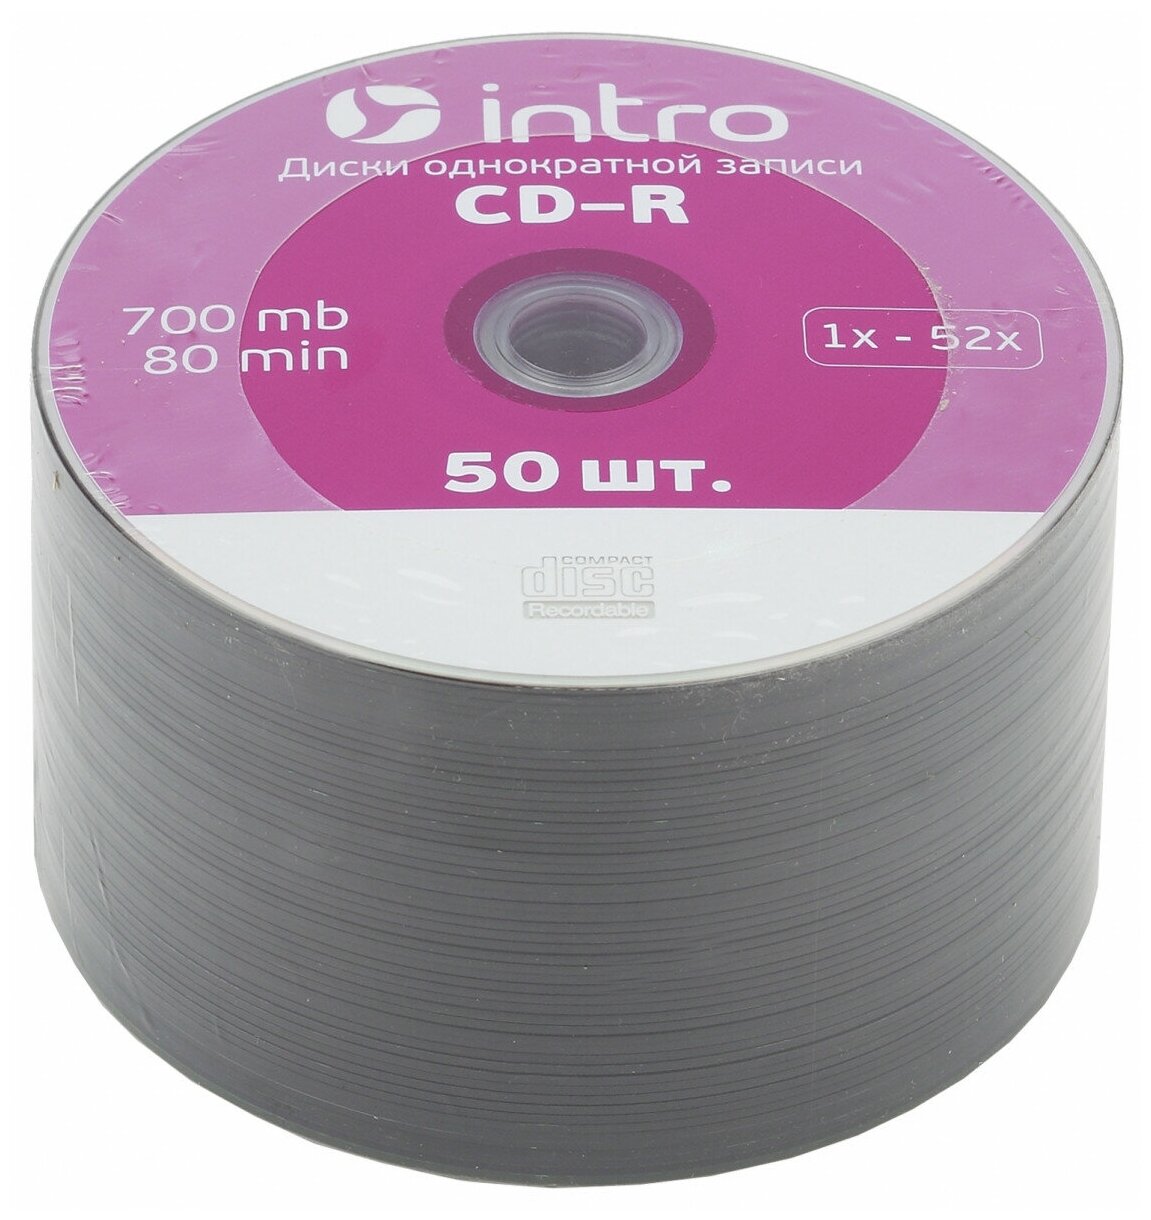 Intro Диск CD-R Intro 700Mb 52x Bulk, 50шт (UL120230A8G)